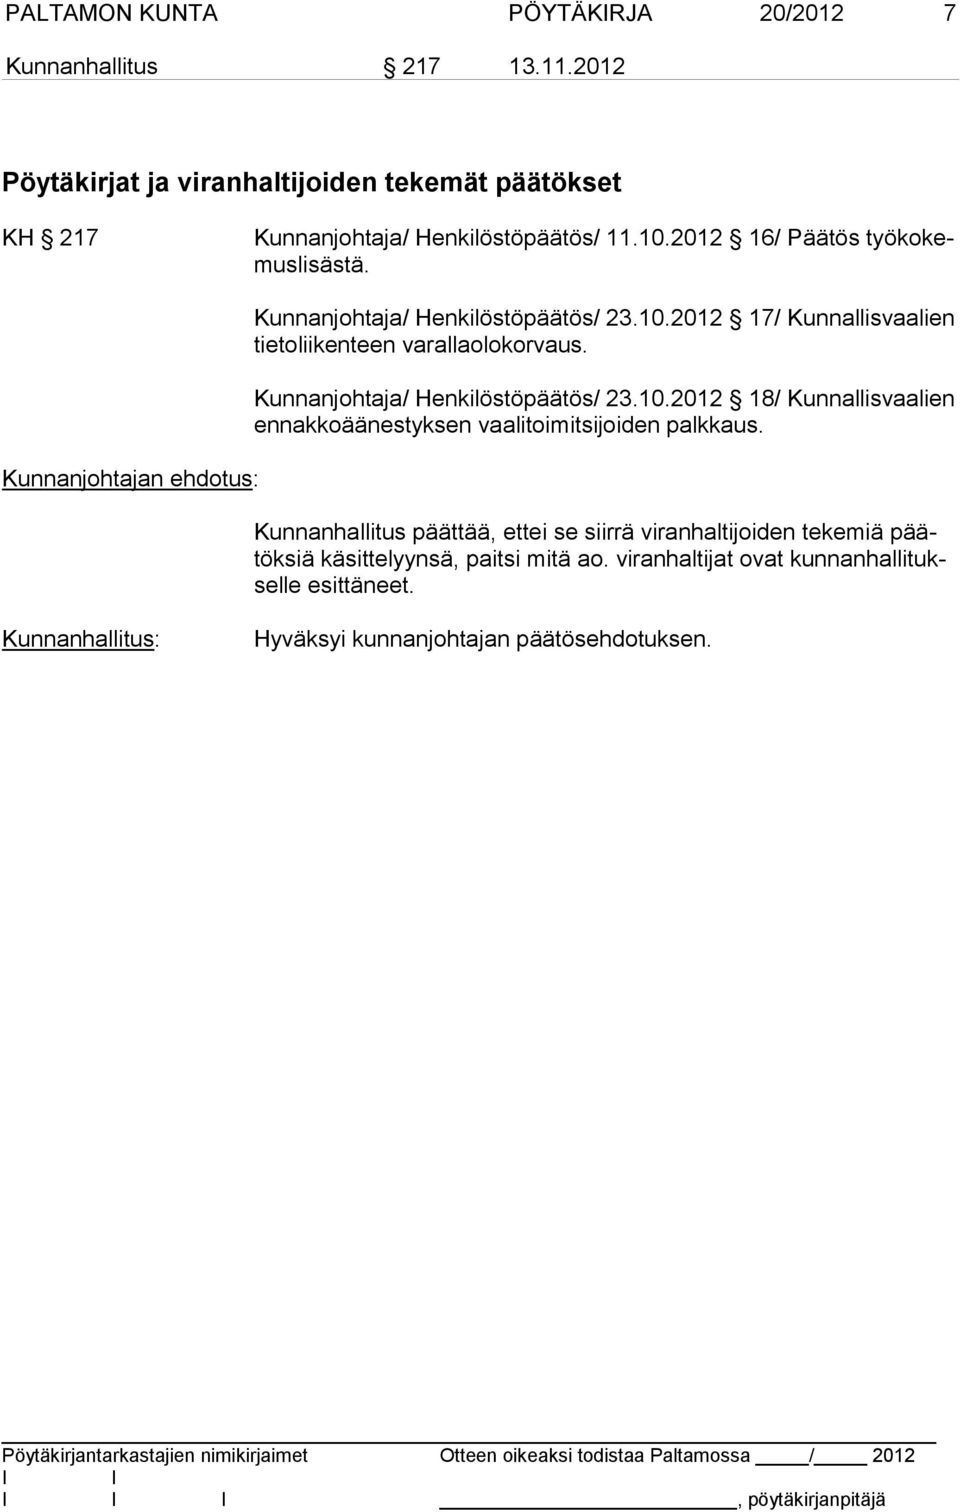 Kunnanjohtaja/ Henkilöstöpäätös/ 23.10.2012 18/ Kunnallisvaalien en nak ko ää nes tyk sen vaalitoimitsijoiden palkkaus.